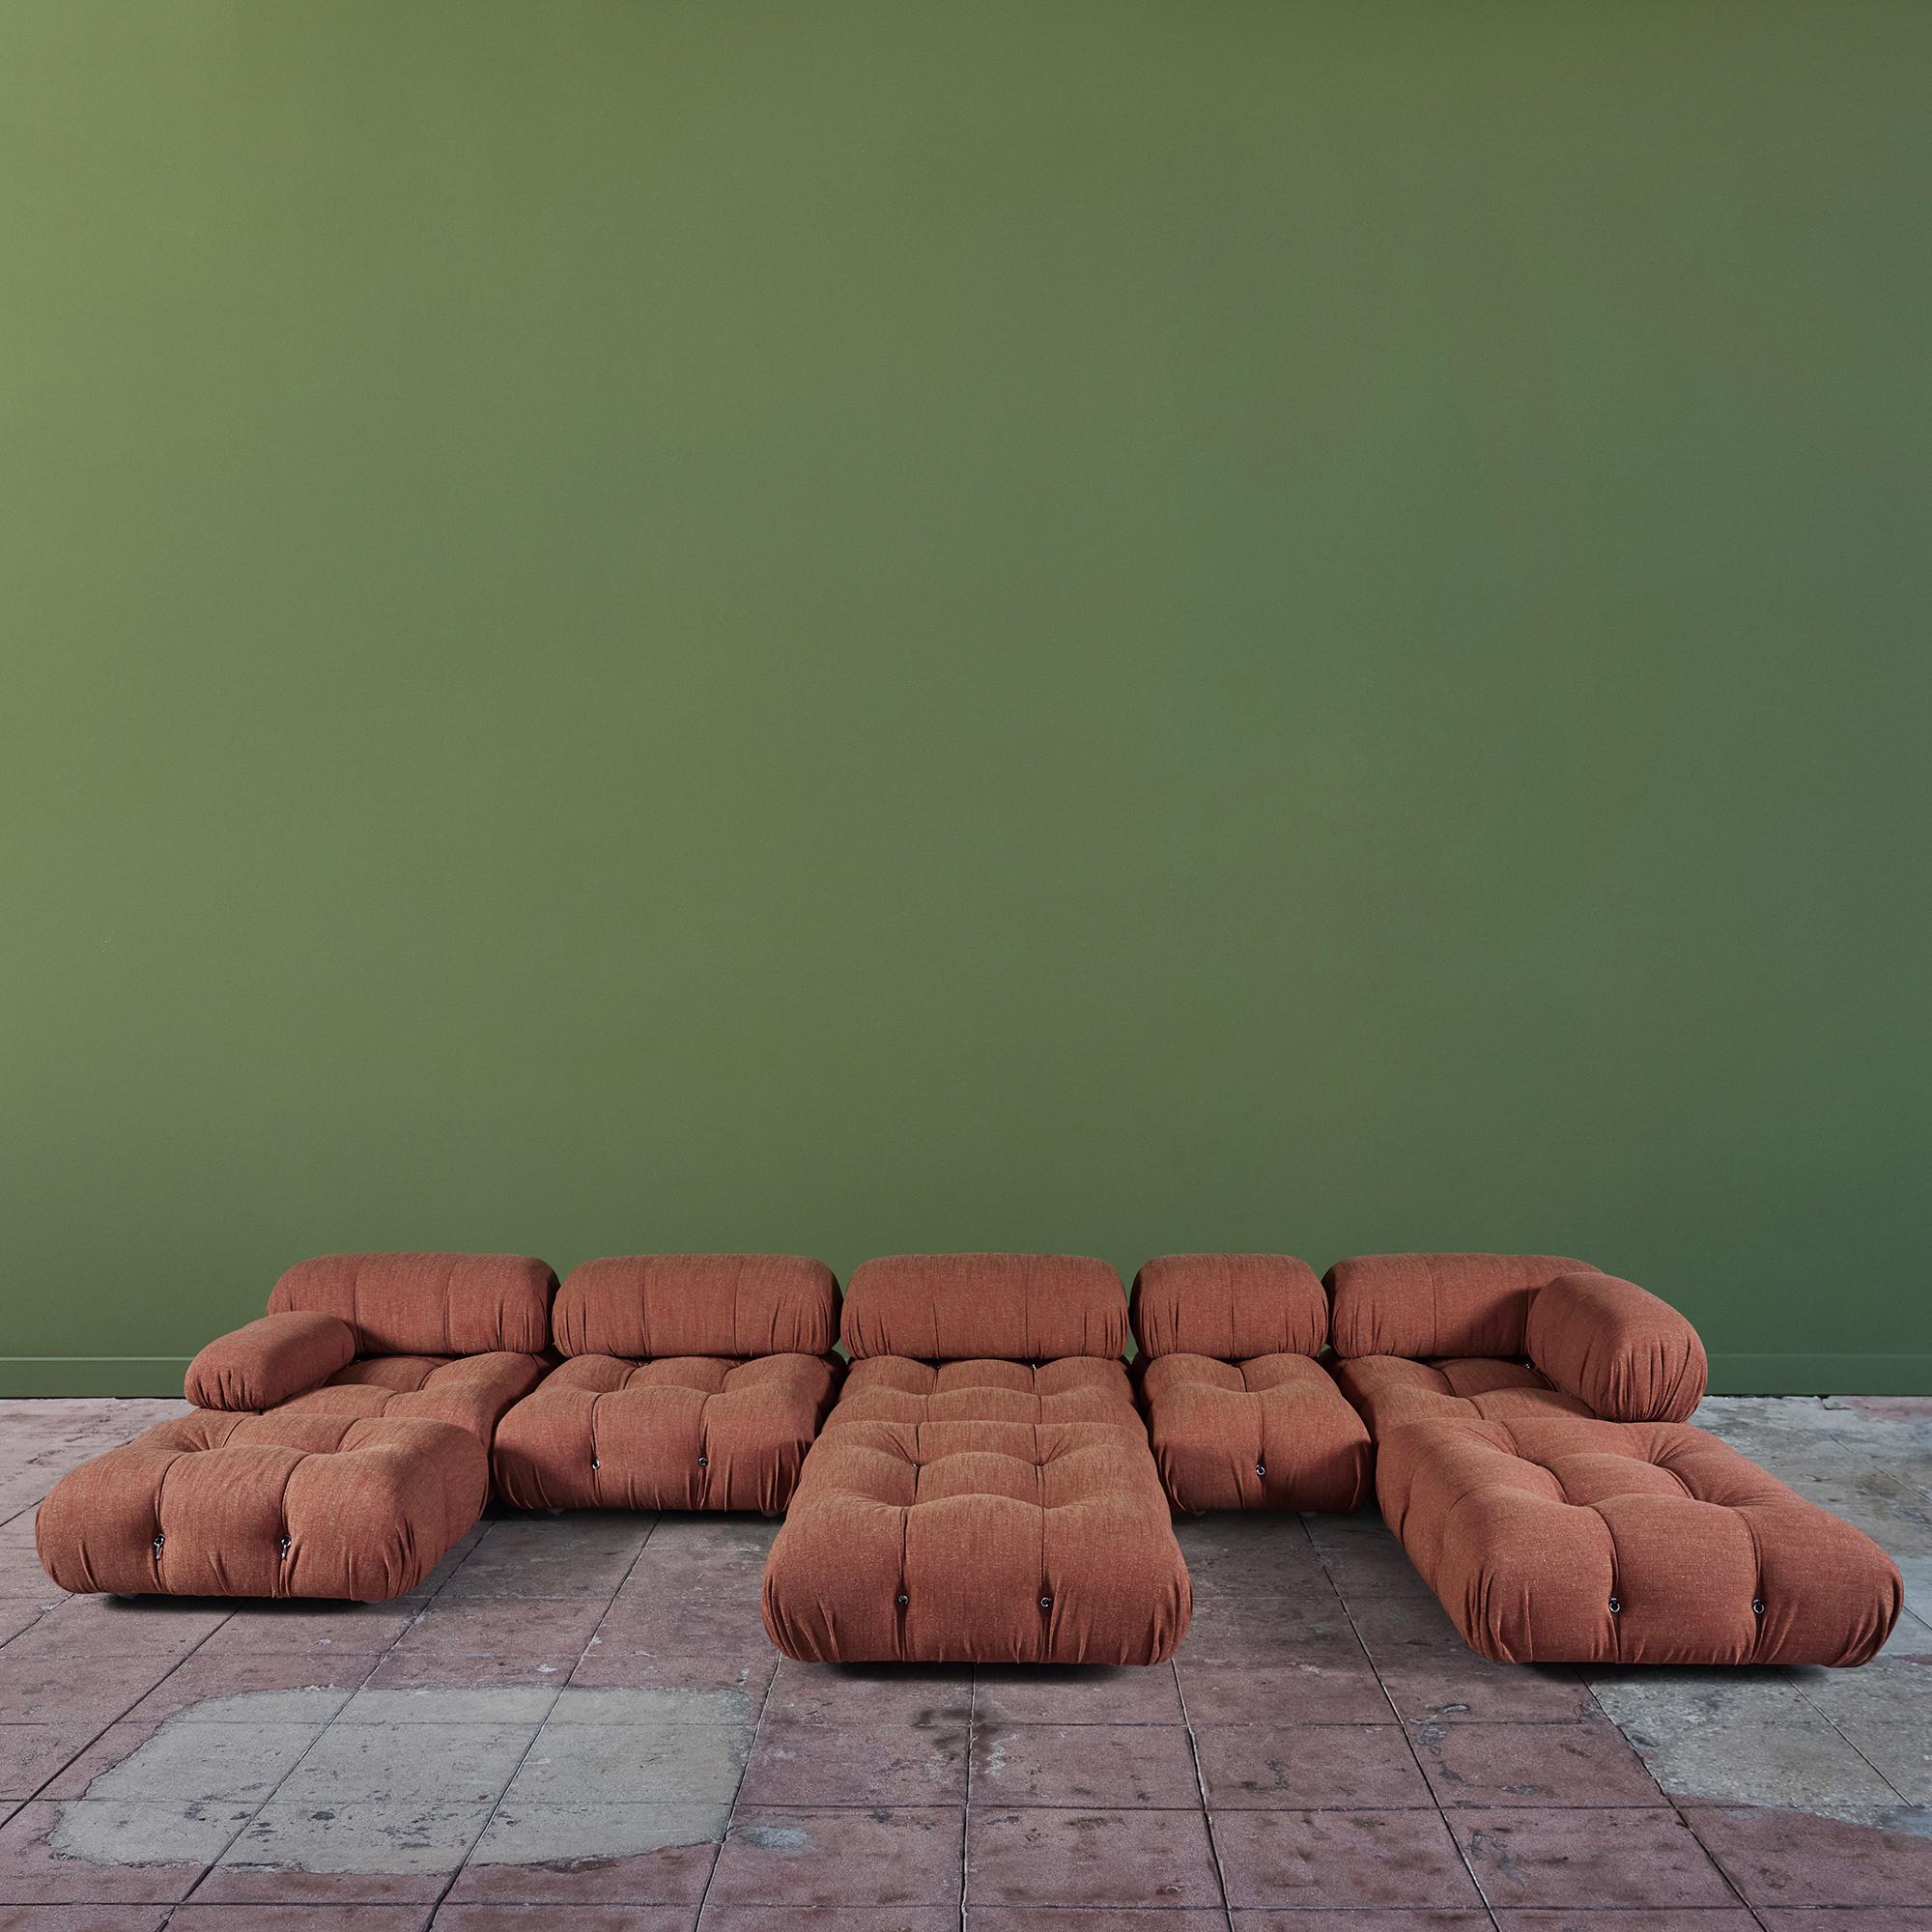 Canapé modulaire Camaleonda par Mario Bellini pour B&B Italia, Italie, c.2000's. Ce canapé est doté de tous les éléments d'assise modulables qui permettent d'obtenir une grande variété d'arrangements. Les dossiers et les accoudoirs sont amovibles et